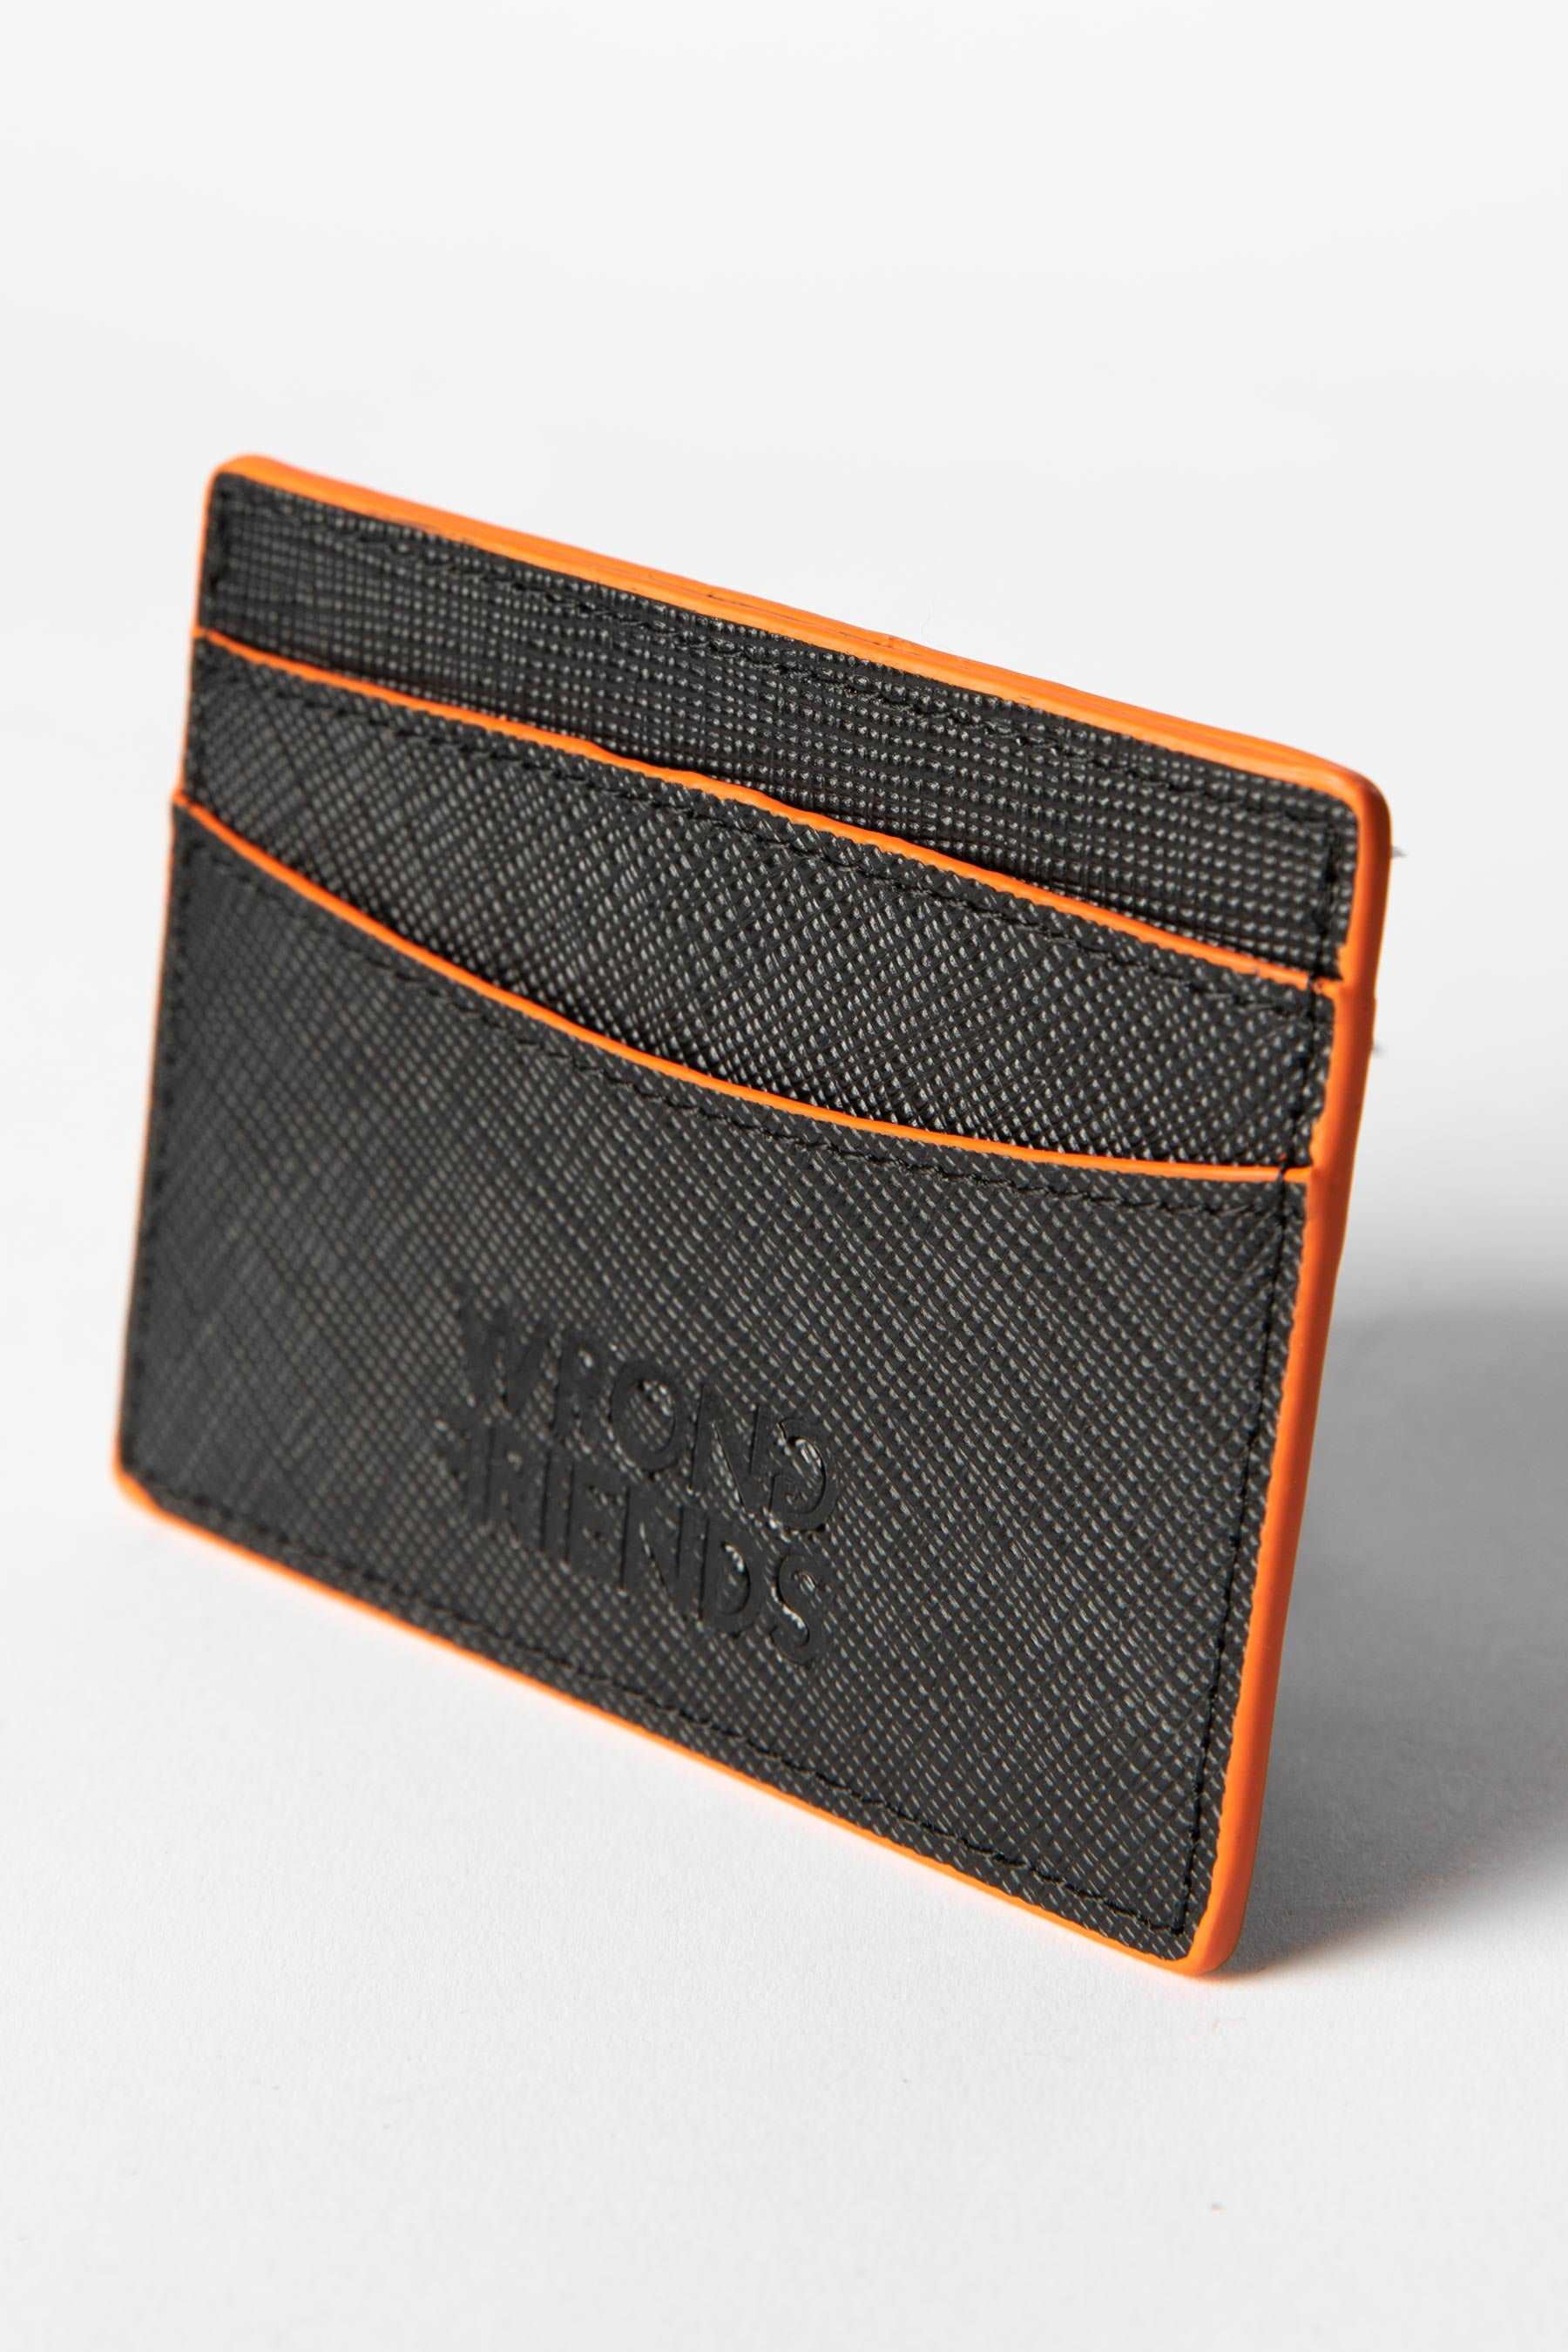 San Remo Cardholder black/orange